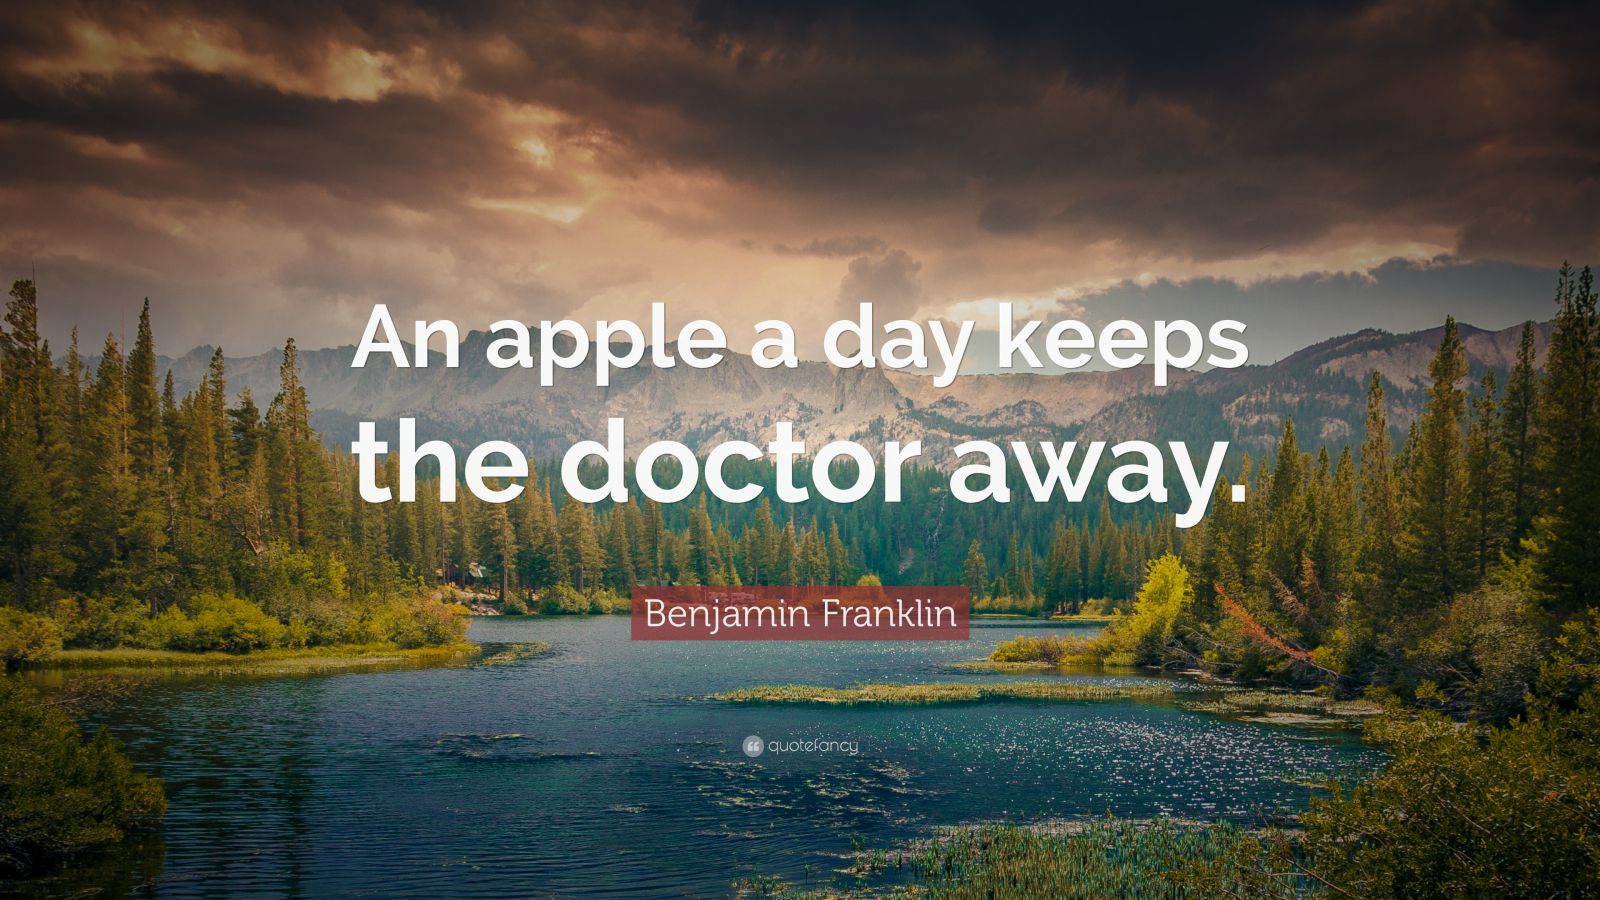 essay on an apple keeps a doctor away